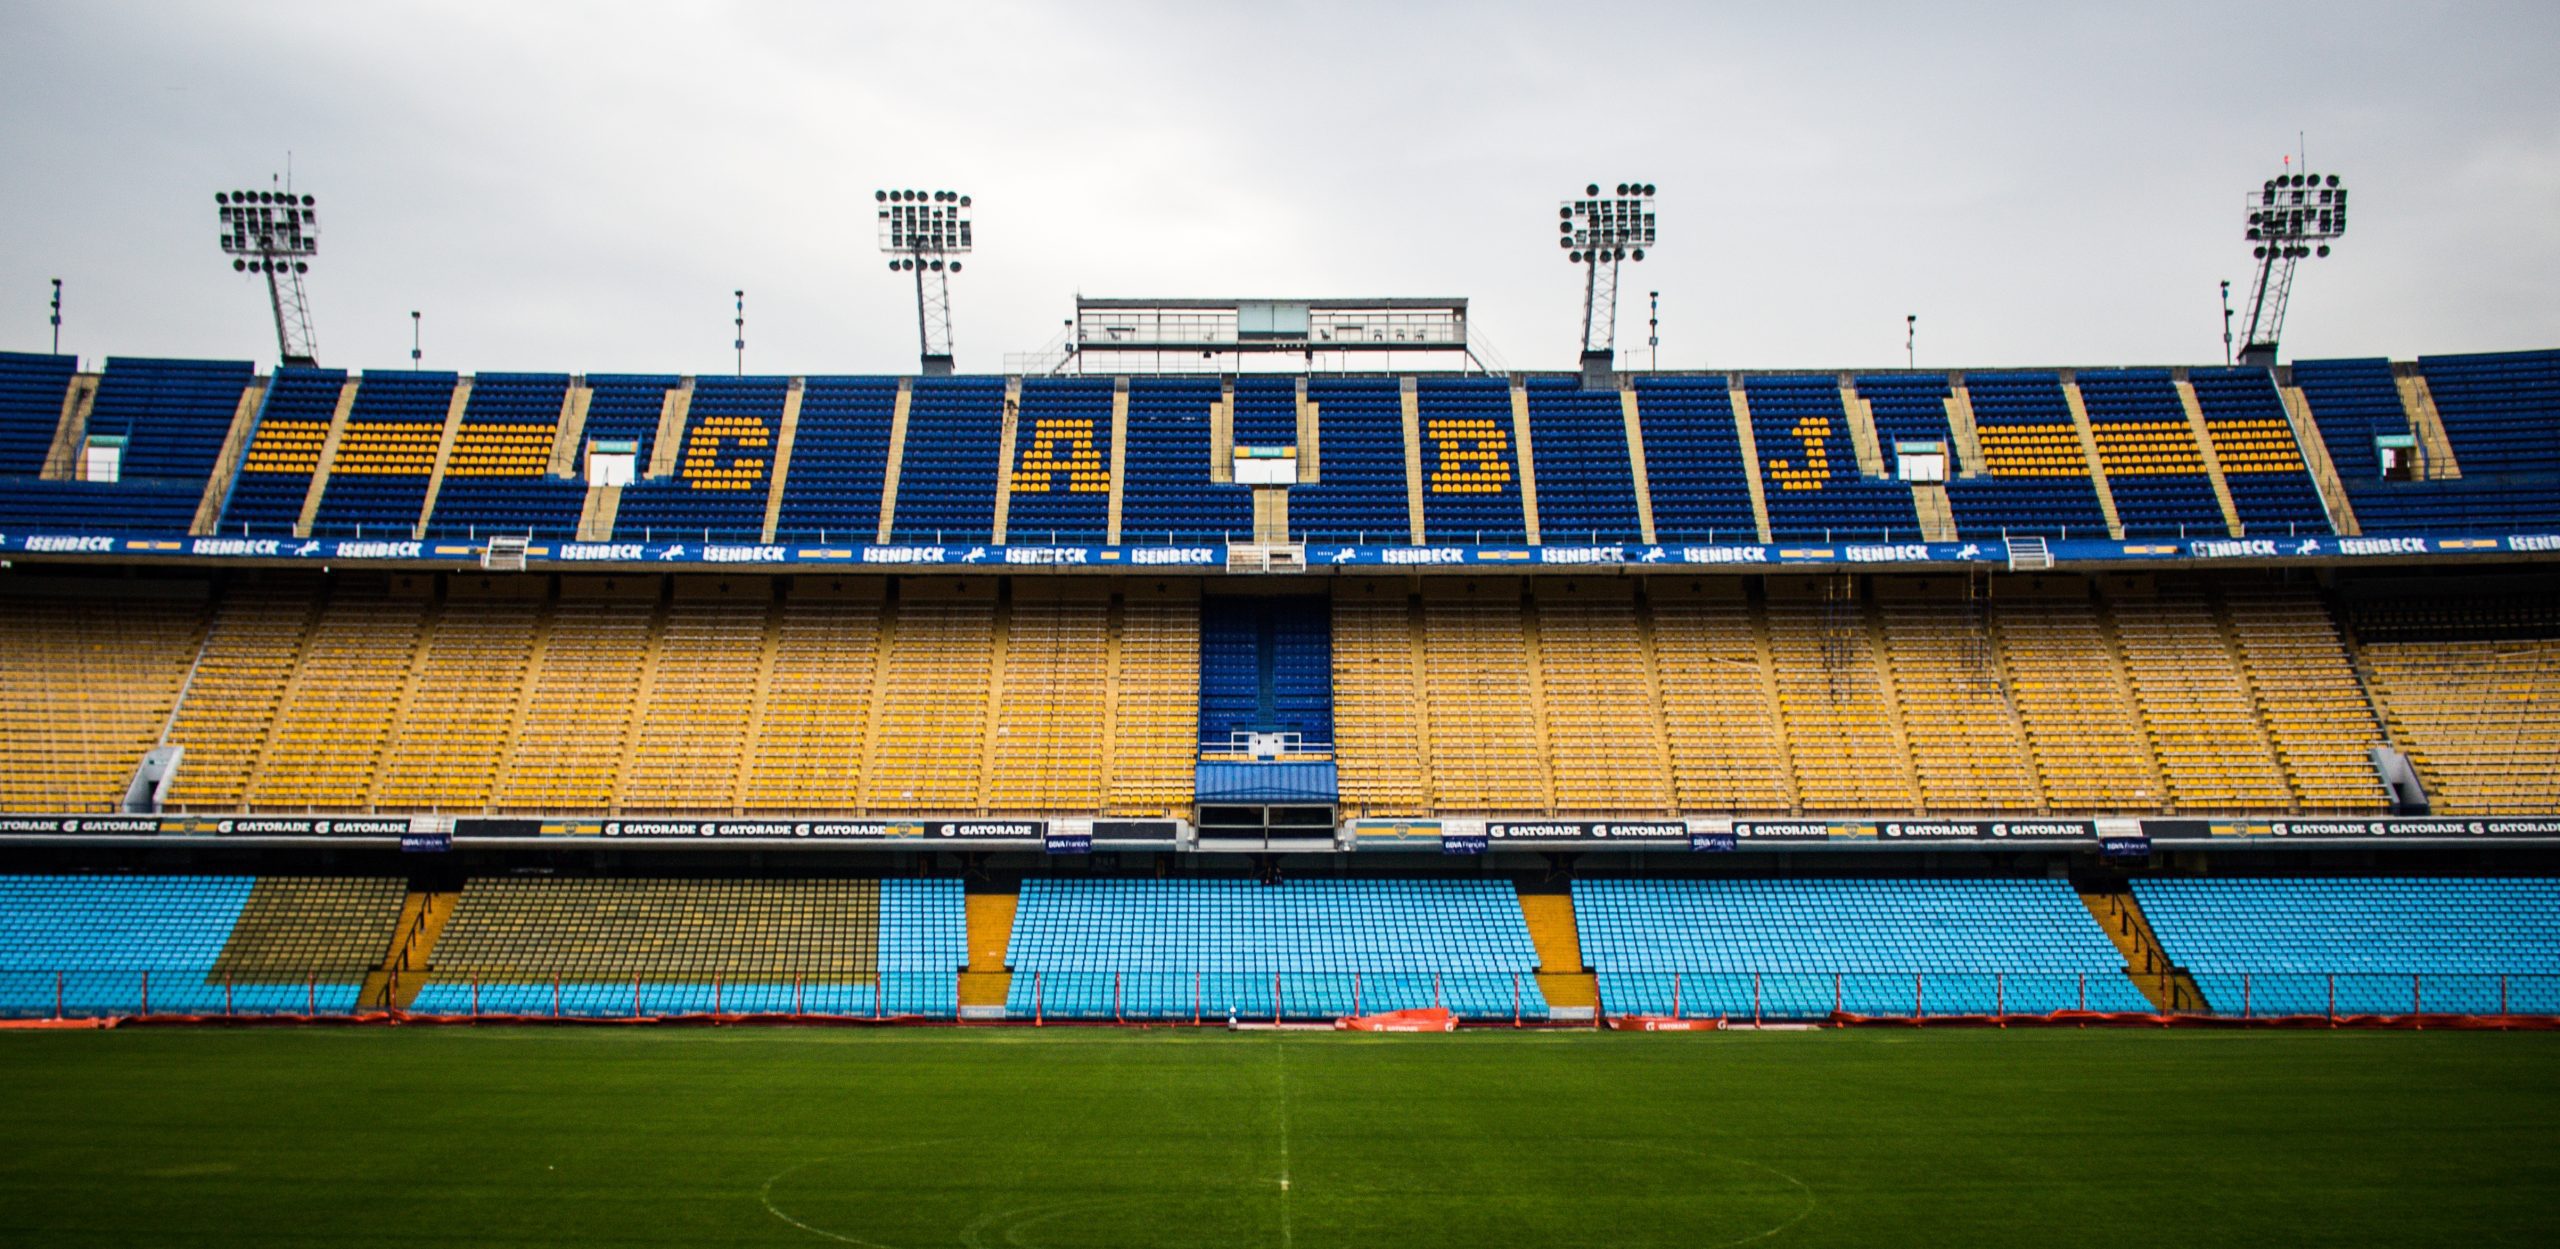 Photos at Estadio Libertadores de América - Ricardo Enrique Bochini (Club  Atlético Independiente) - Soccer Stadium in Avellaneda